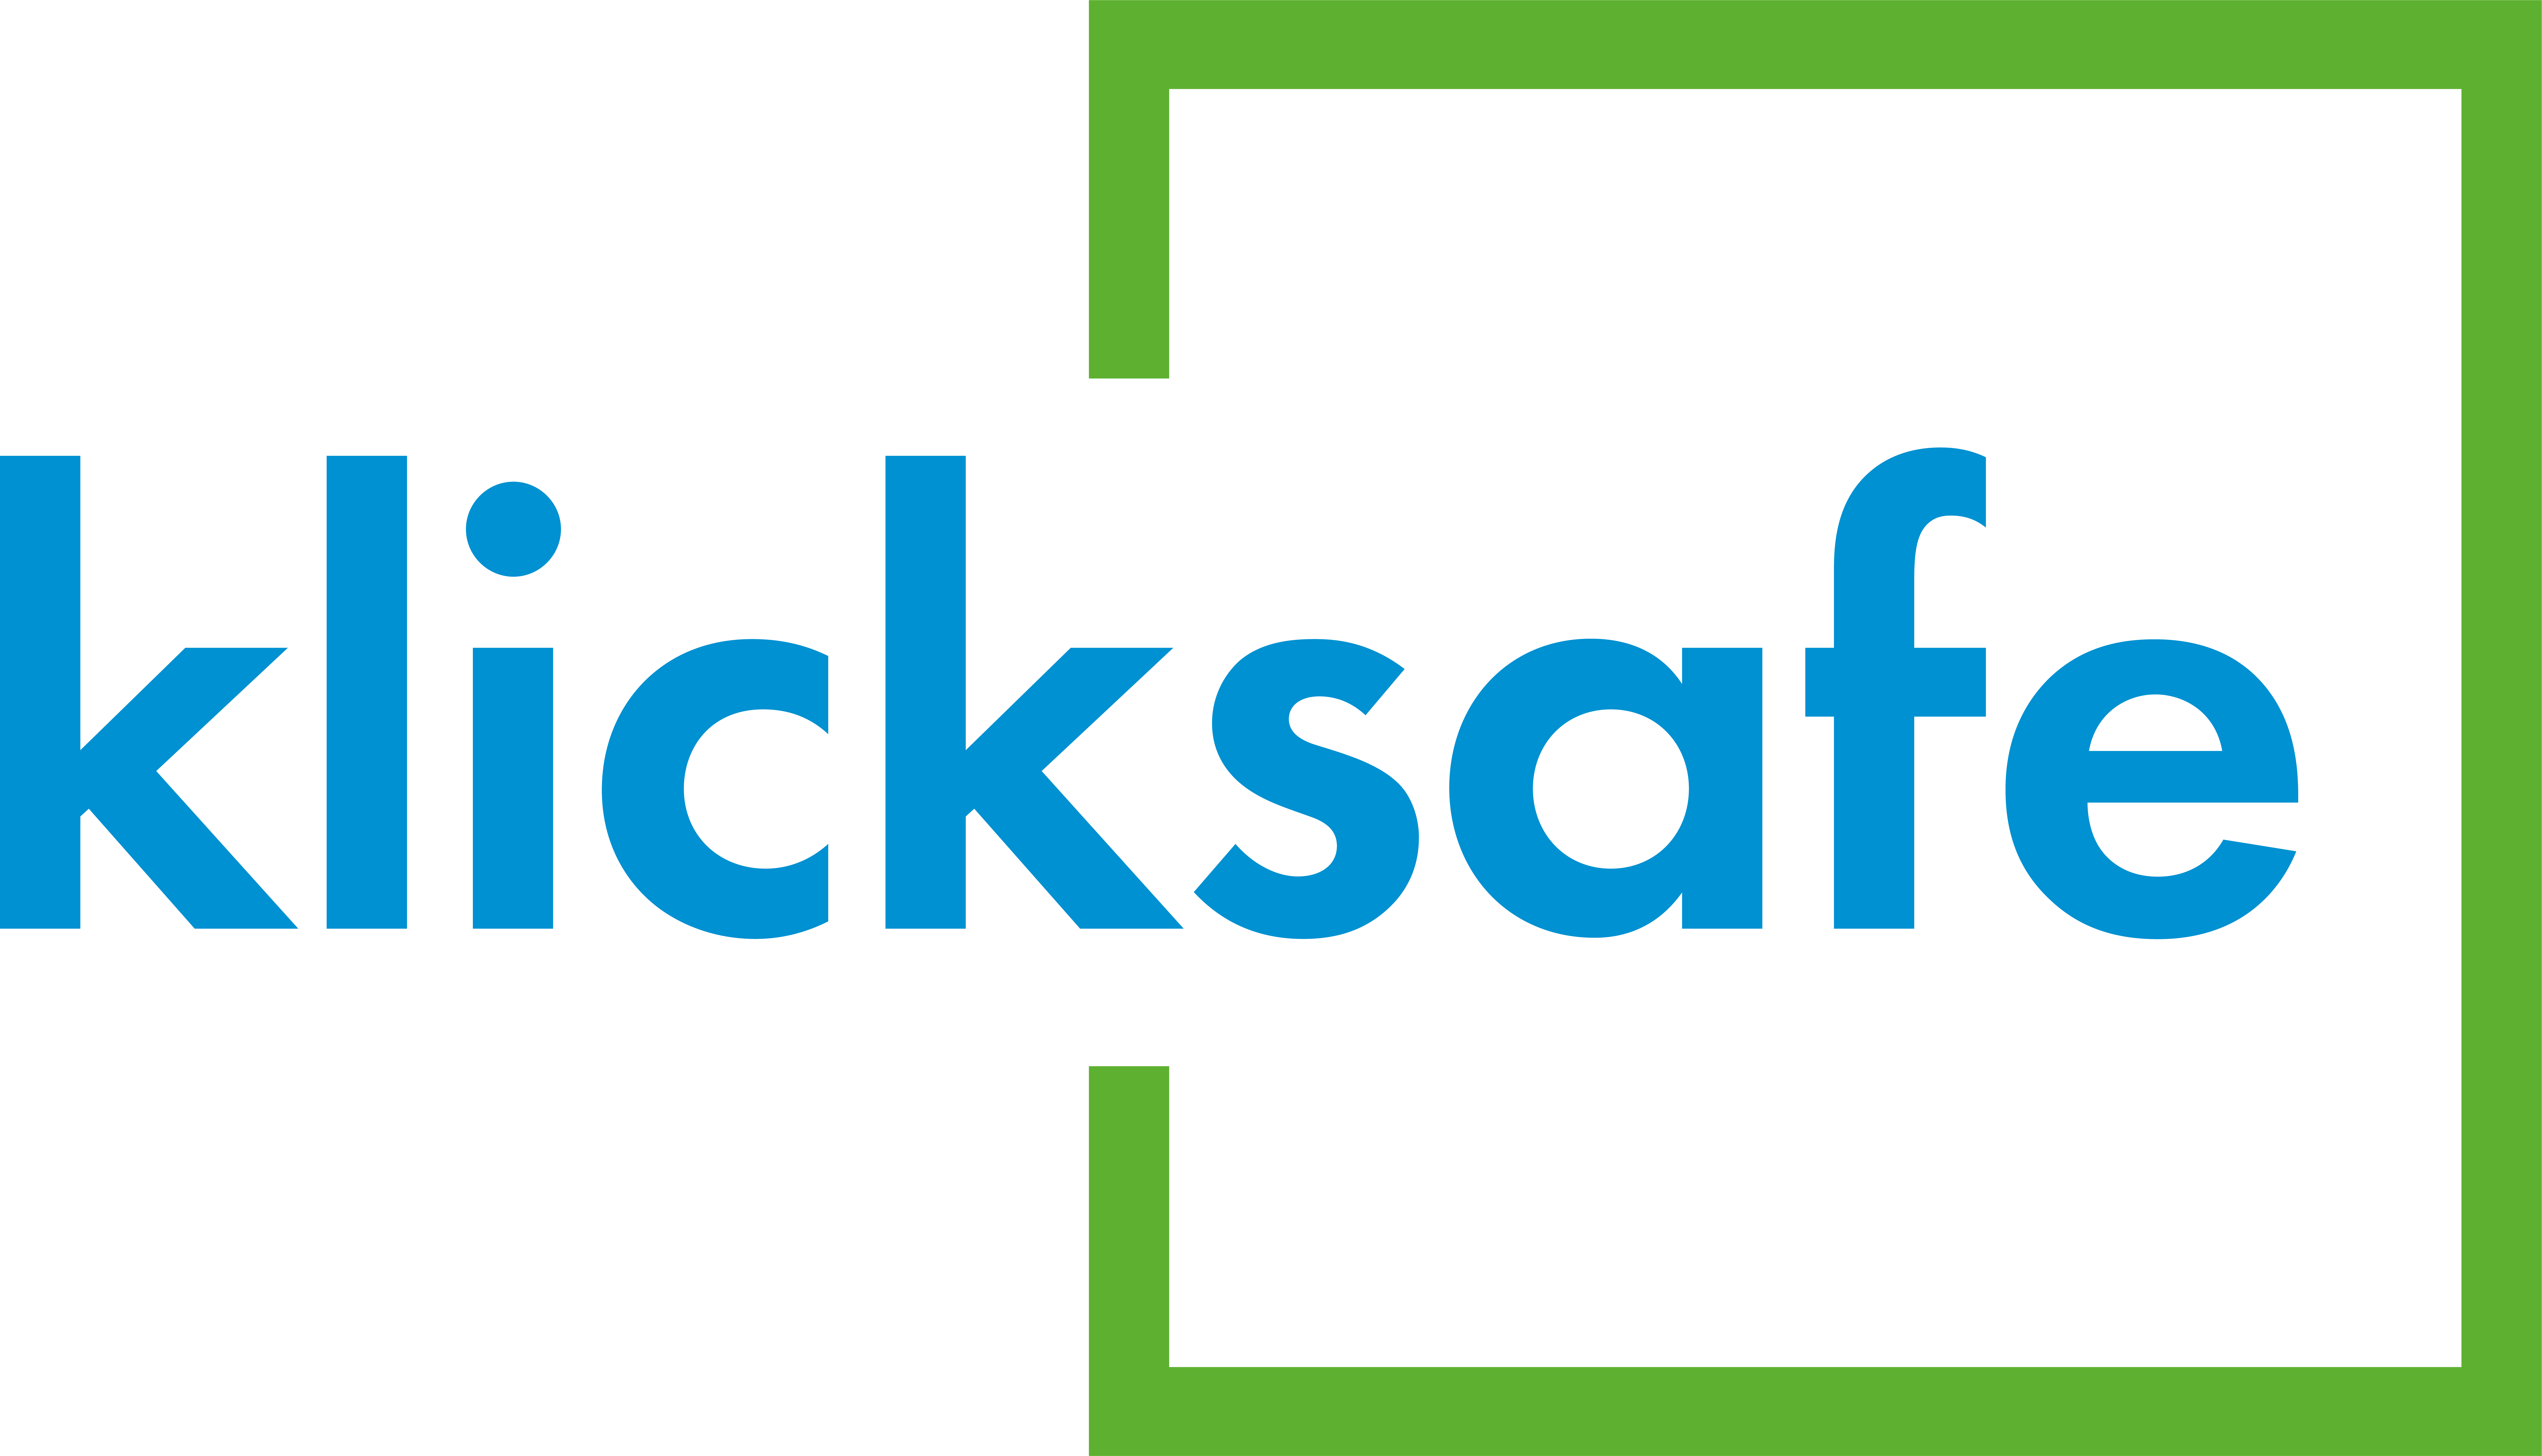 Erotische Bilder verschicken klicksafe Logo no Claim